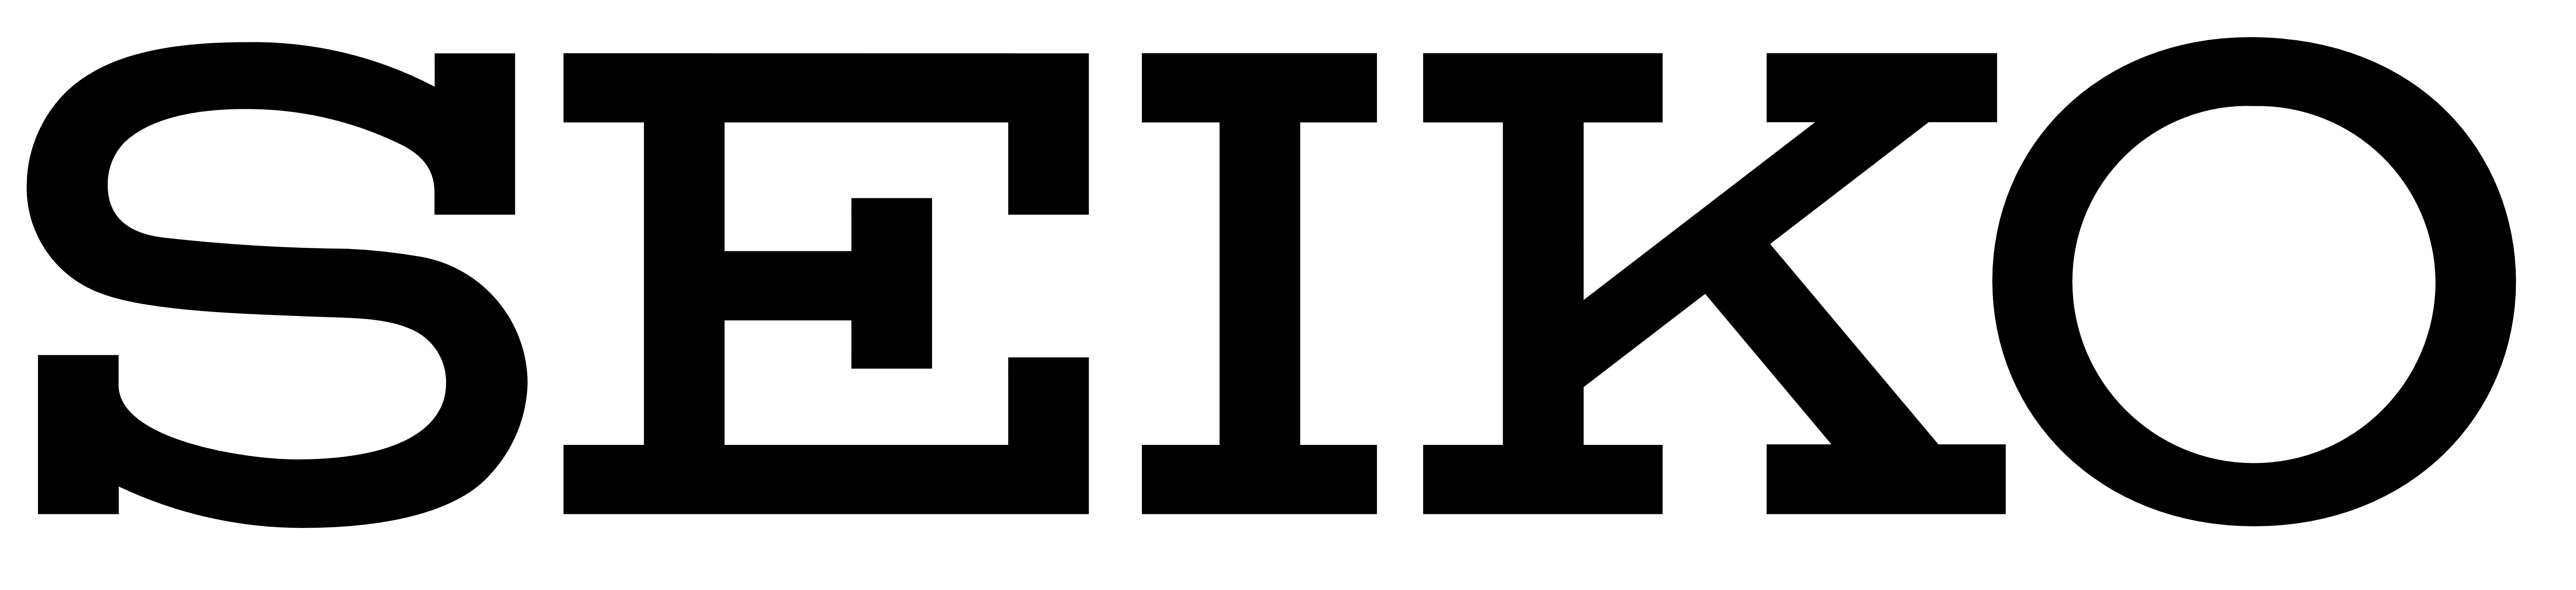 Seiko logo, logotype